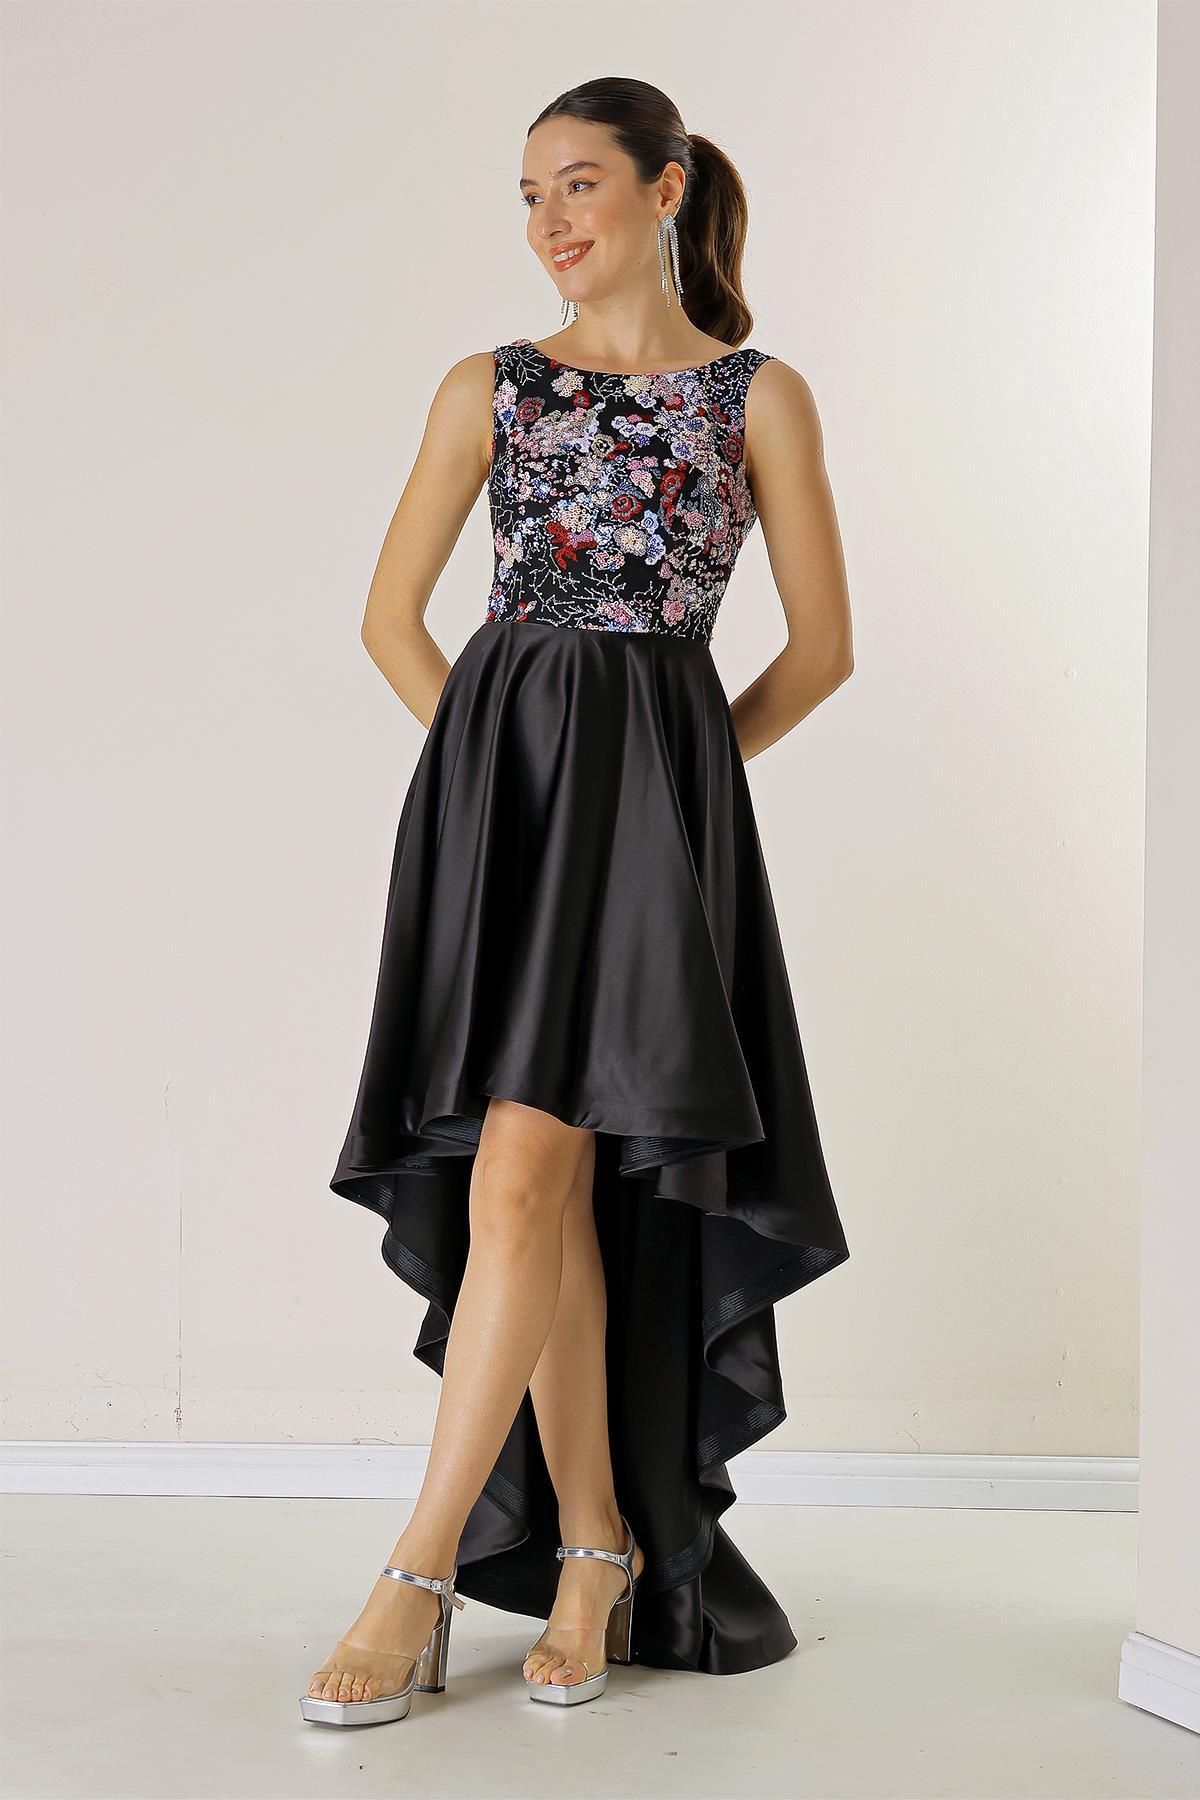 Levně By Saygı Embroidered Sequins Floral Top Short Front Long Back Long Lined Satin Long Dress